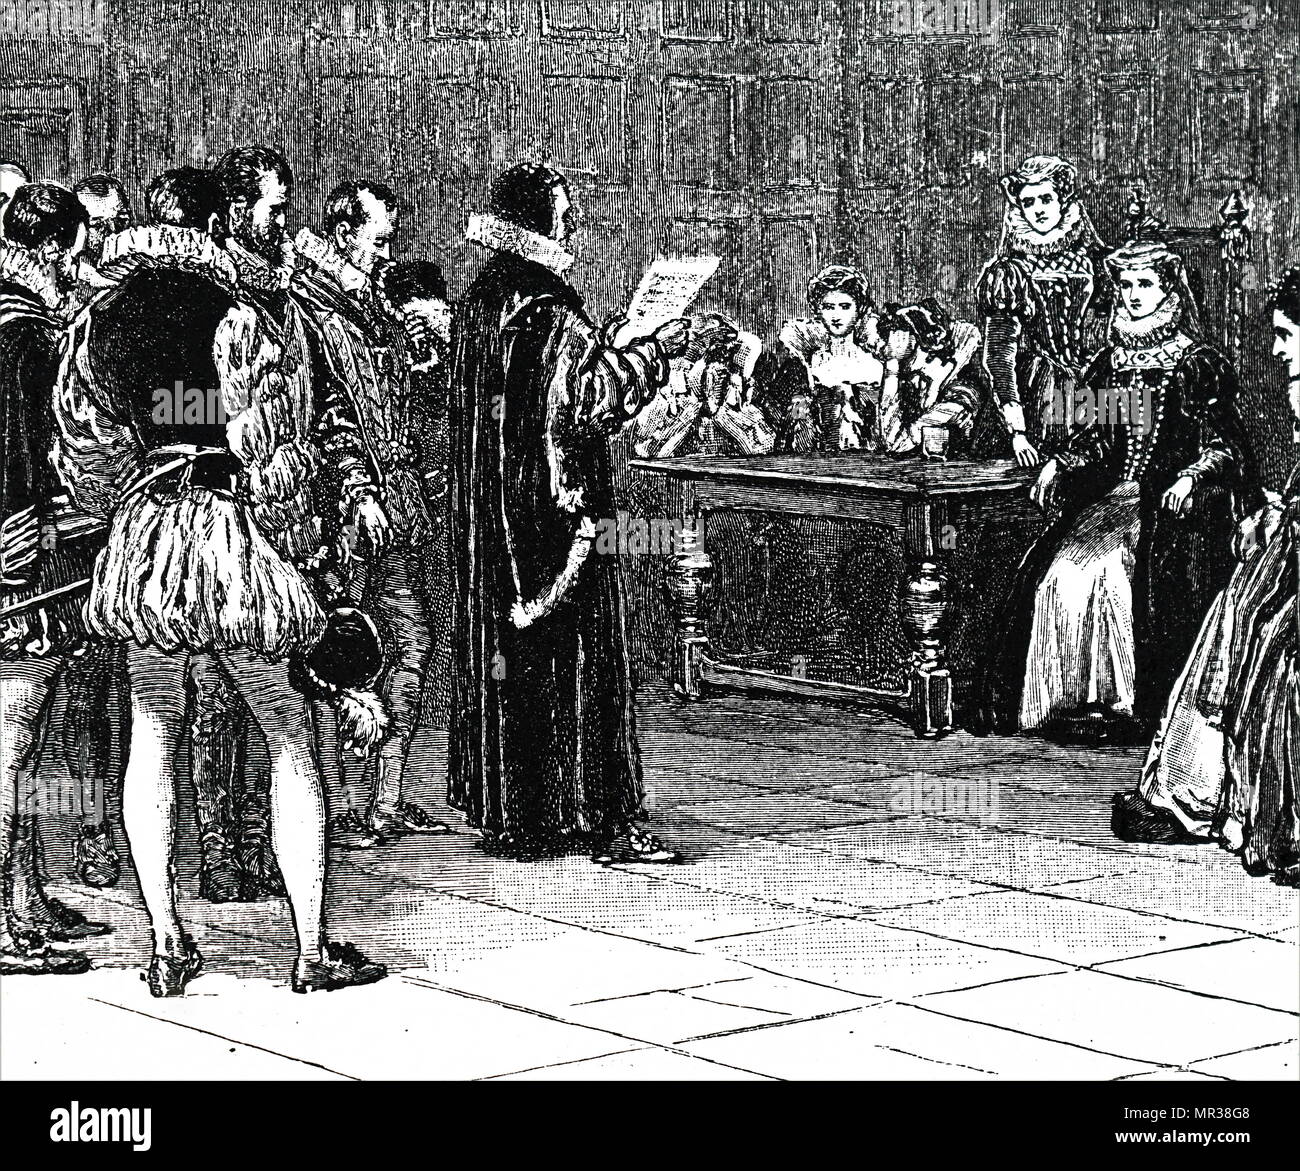 Gravur, Mary, Königin der Schotten ihre Strafe empfangen. Maria, Königin von Schottland (1542-1587), auch bekannt als Maria Stuart oder Maria I, in Schottland von 1542-1567 regierte. Sie war schuldig der Verschwörung zur Ermordung der Königin Elizabeth I in 1586 und wurde im folgenden Jahr enthauptet gefunden. Vom 16. Jahrhundert Stockfoto